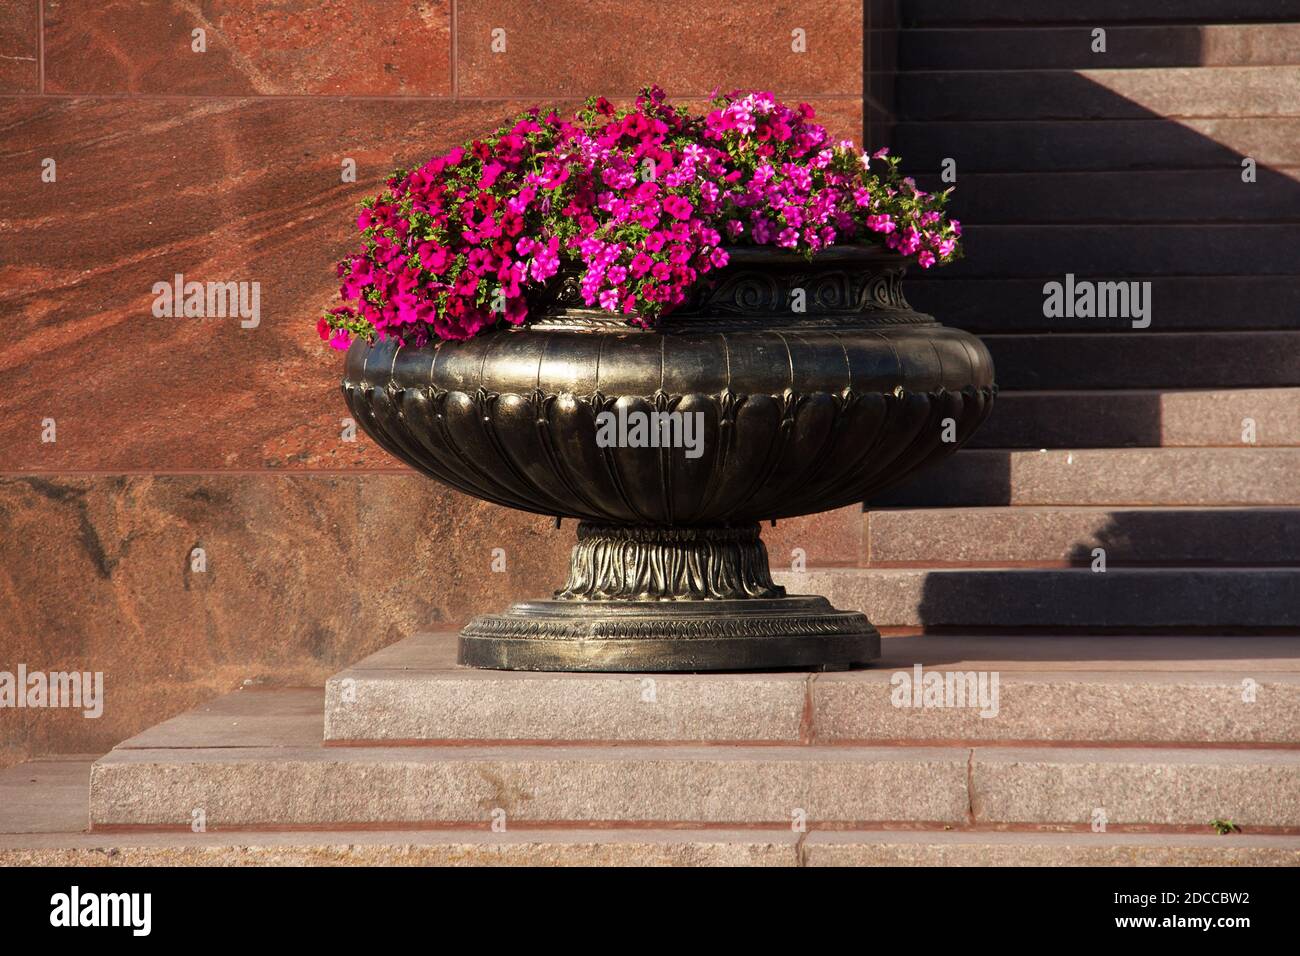 Ferro decorativo vasca da giardino con fiori di colore rosa Foto Stock